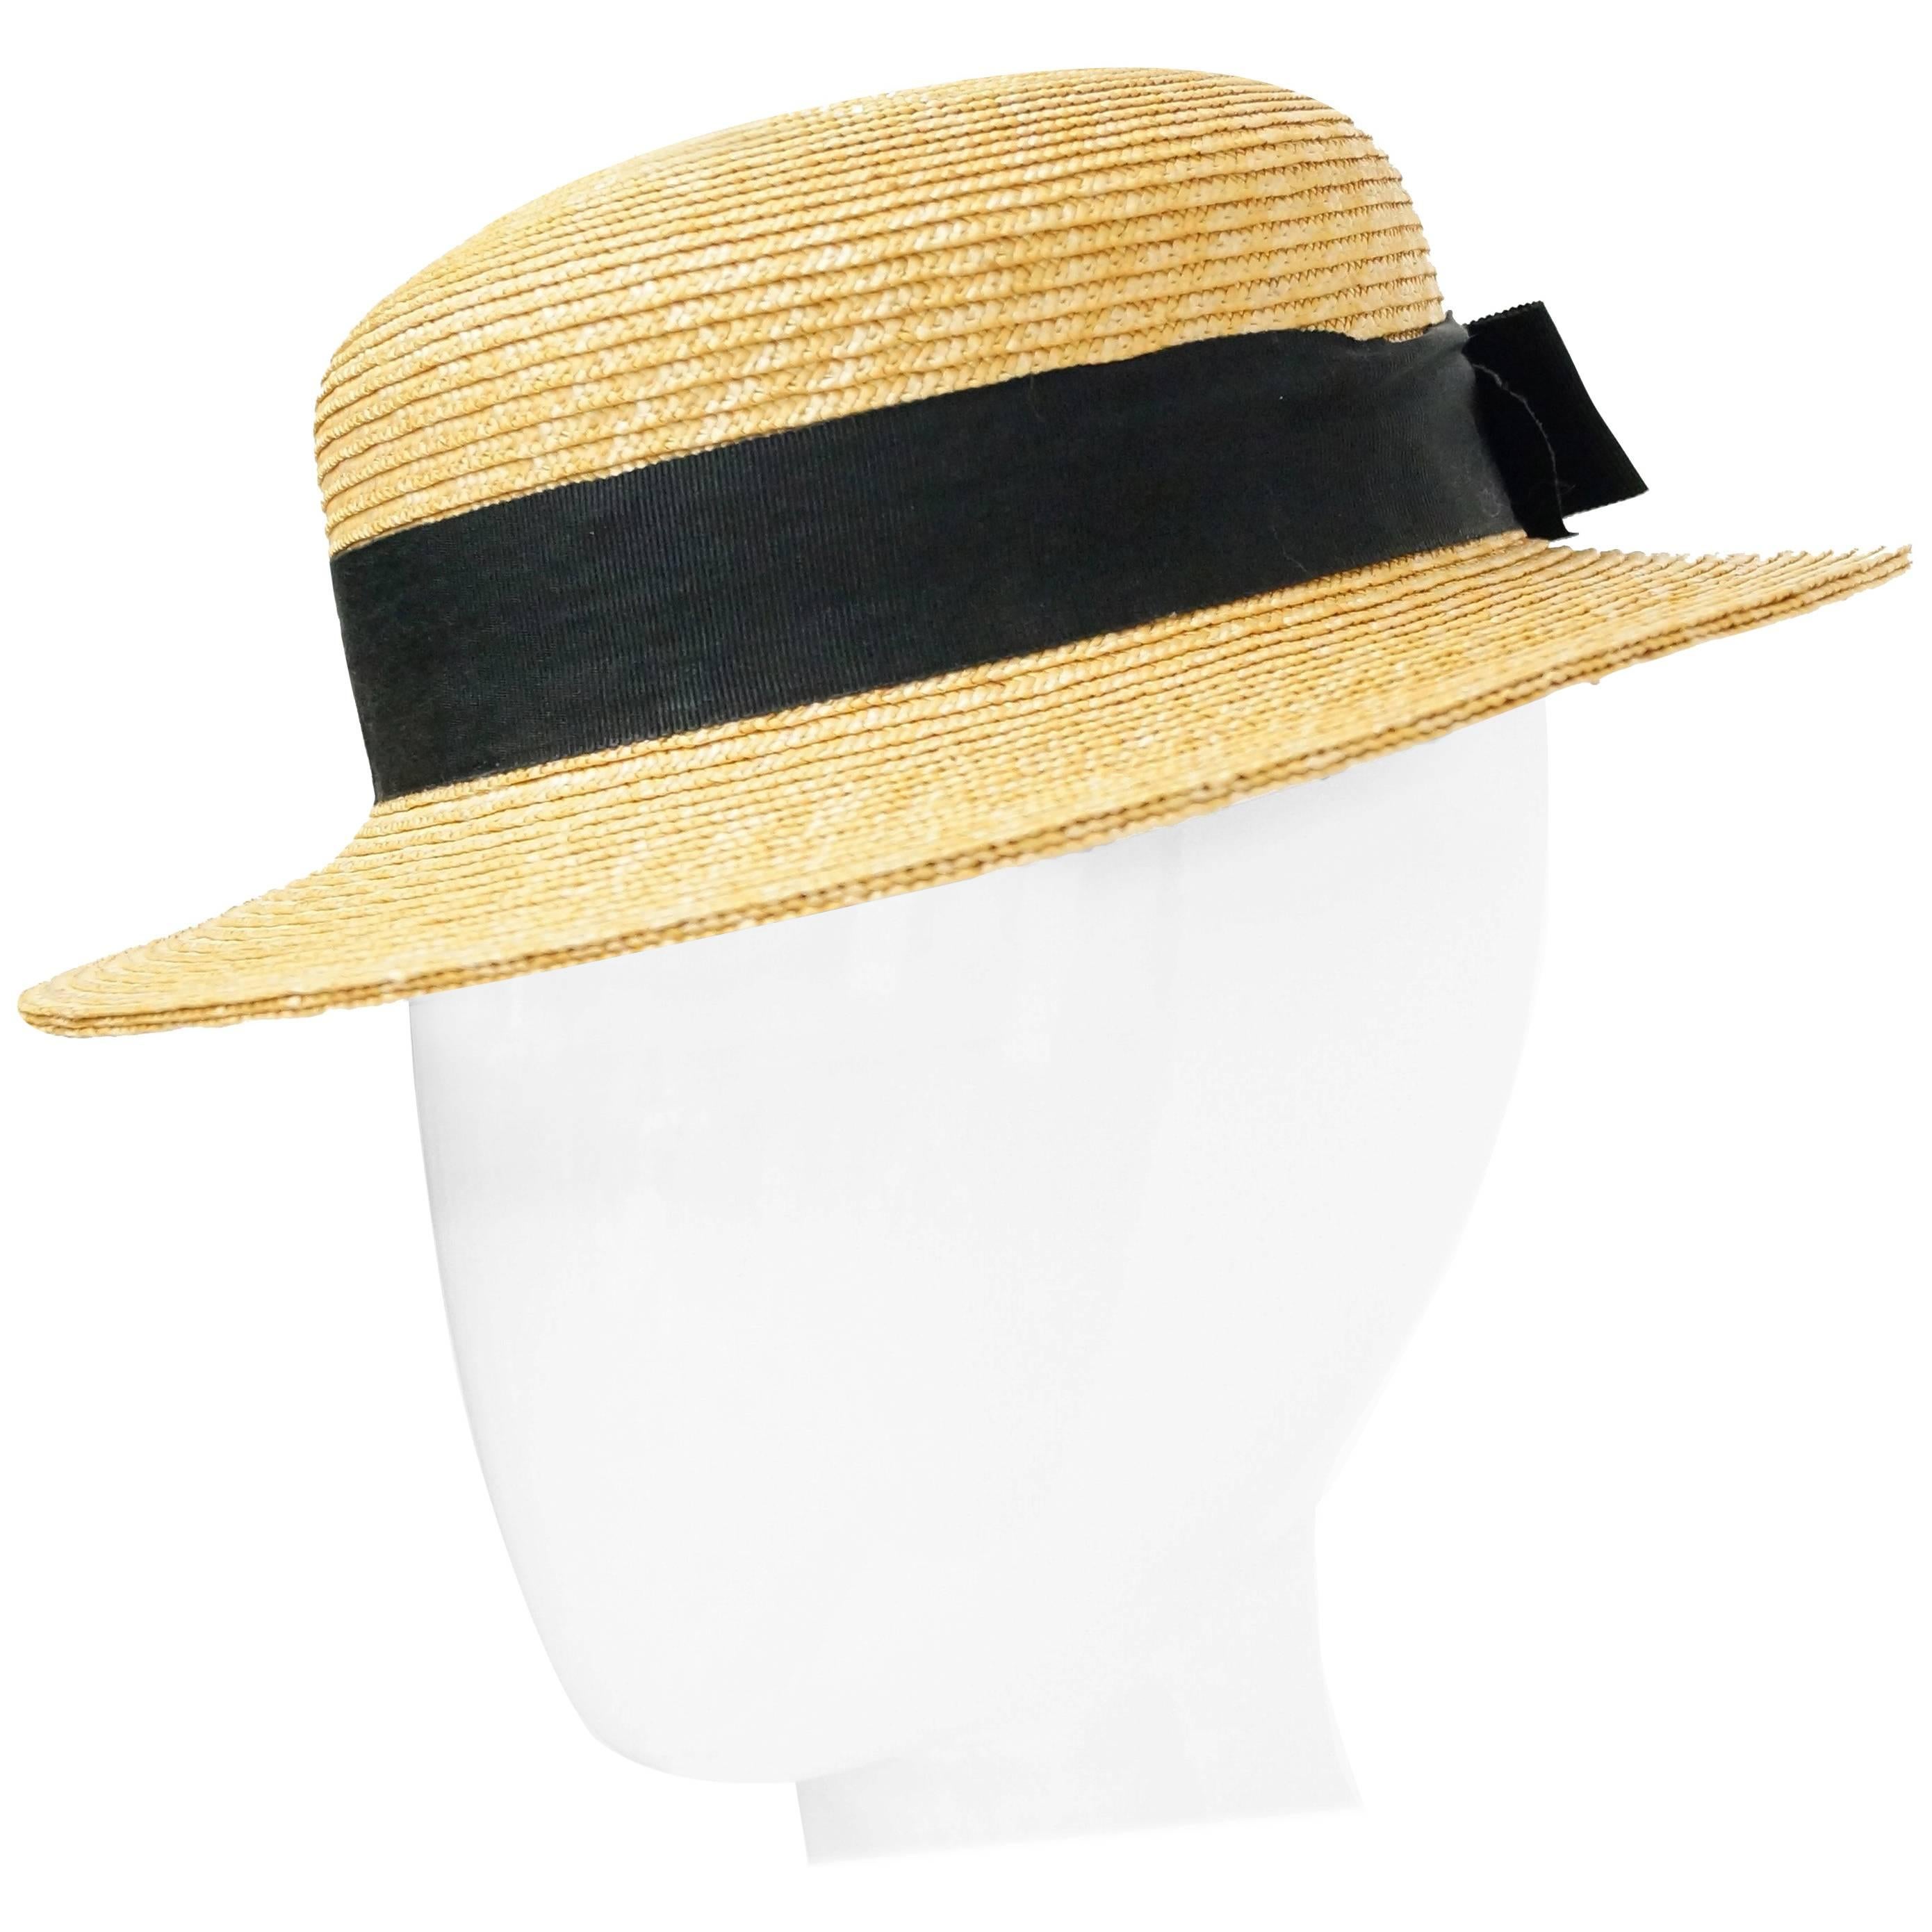 Rare 1980s Yves Saint Laurent Straw Boater Hat